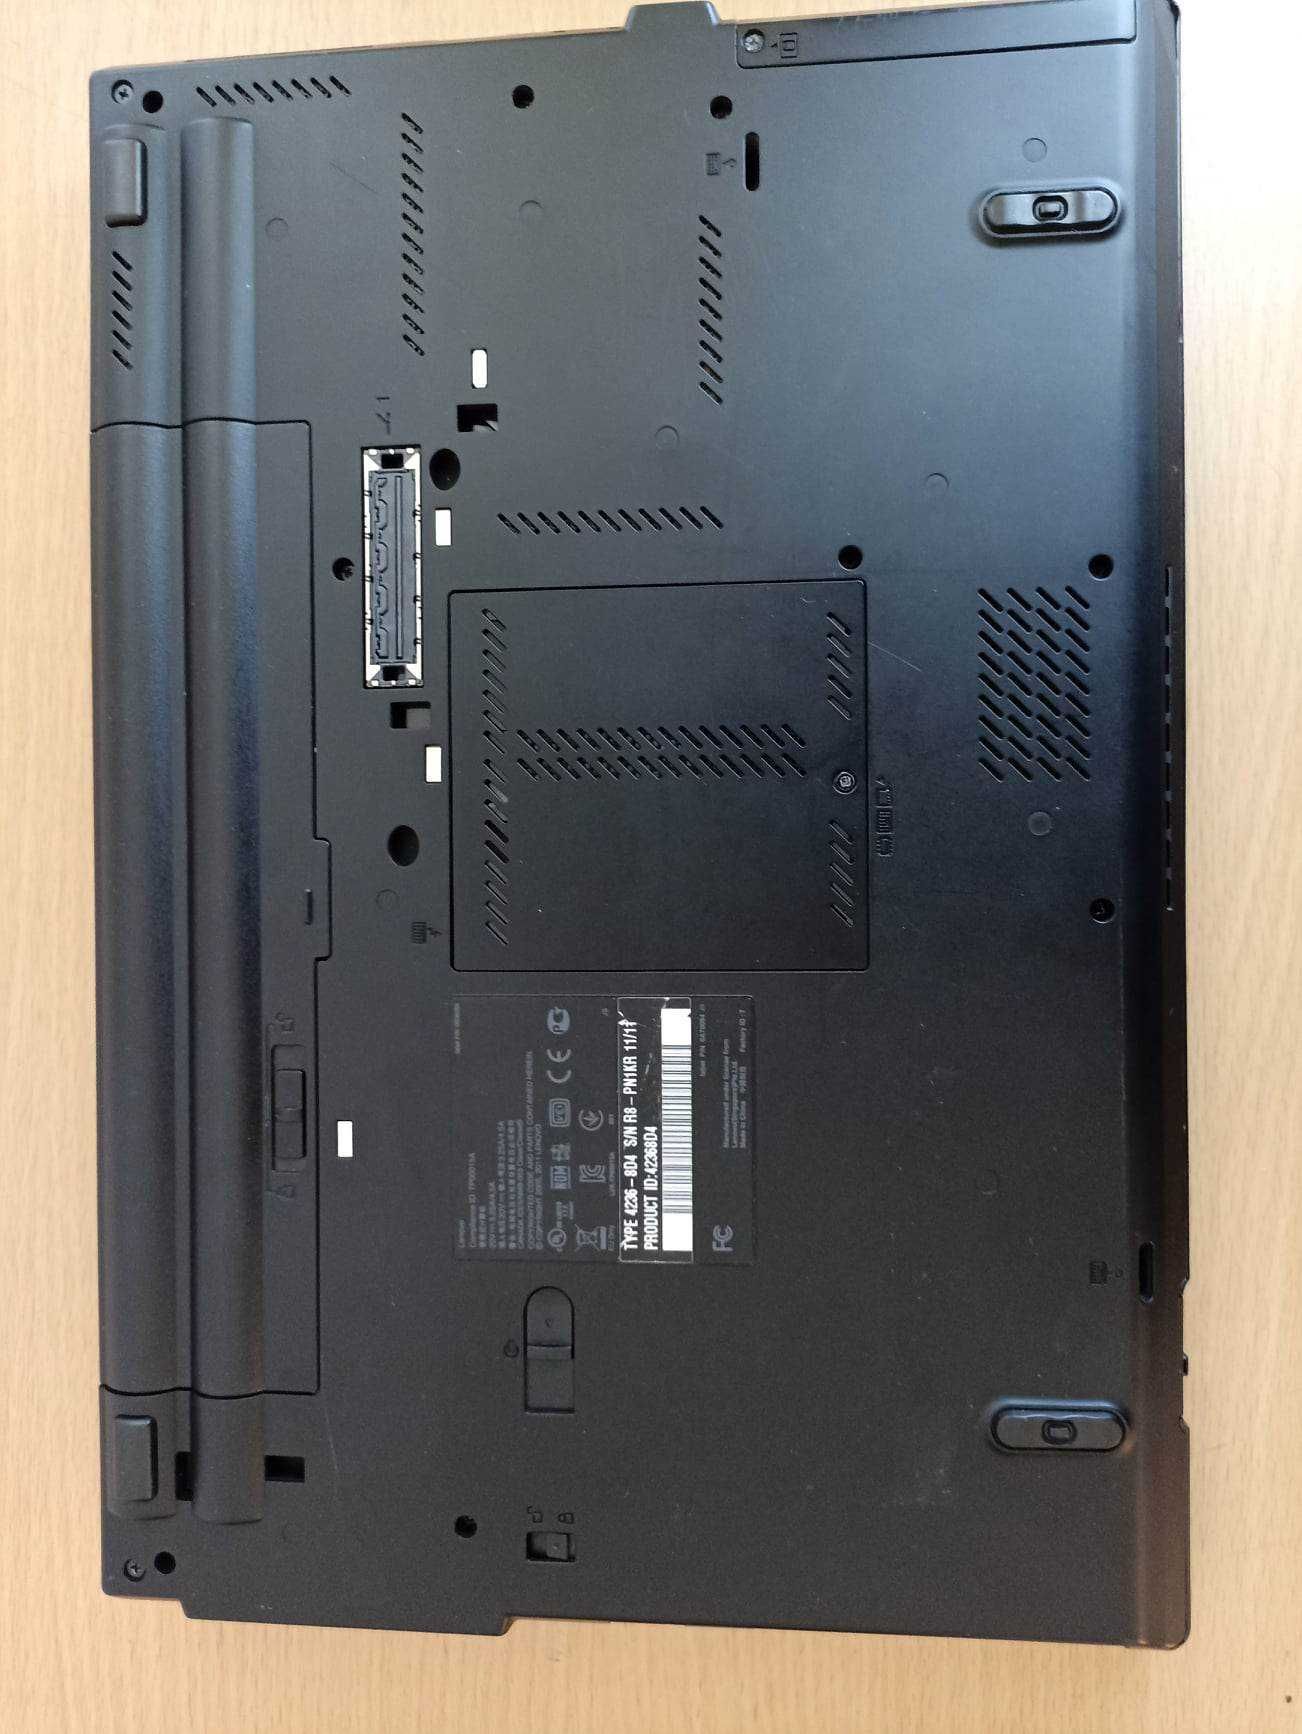 Laptop Lenovo T420, I5, gen2, 8Gb Ram, SSD 160Gb! Garantie! Variante!